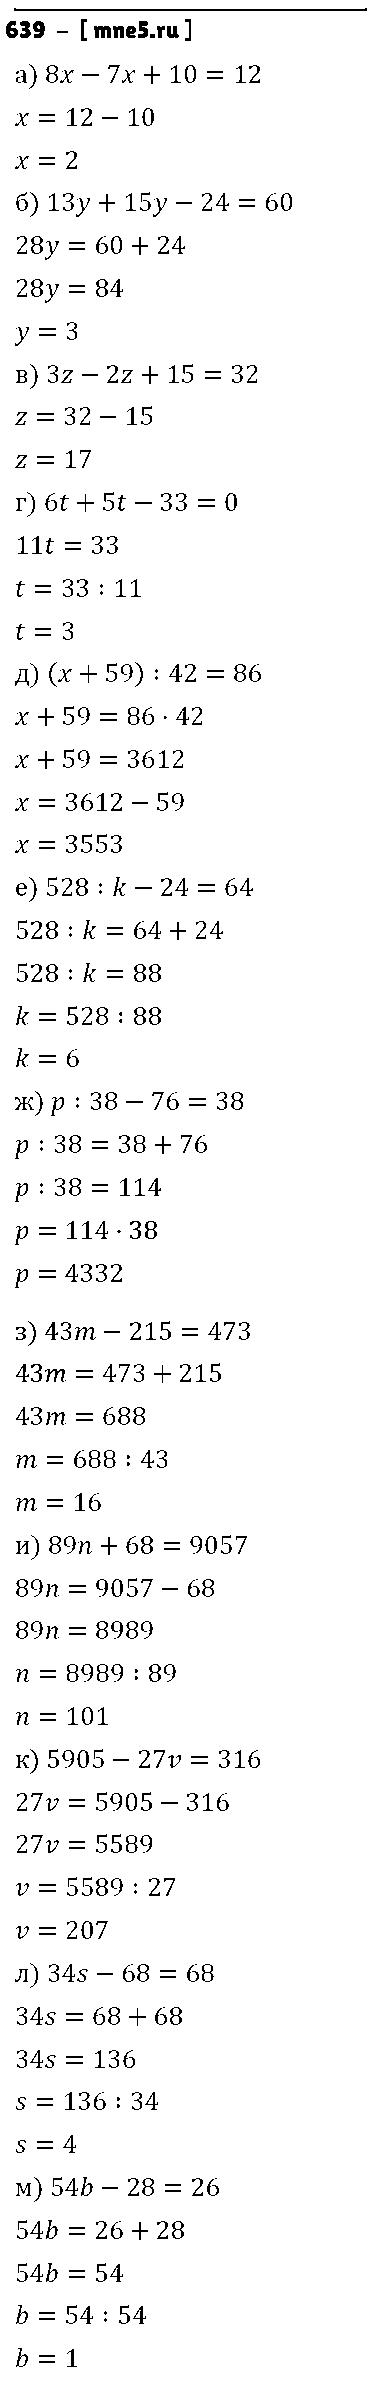 ГДЗ Математика 5 класс - 639